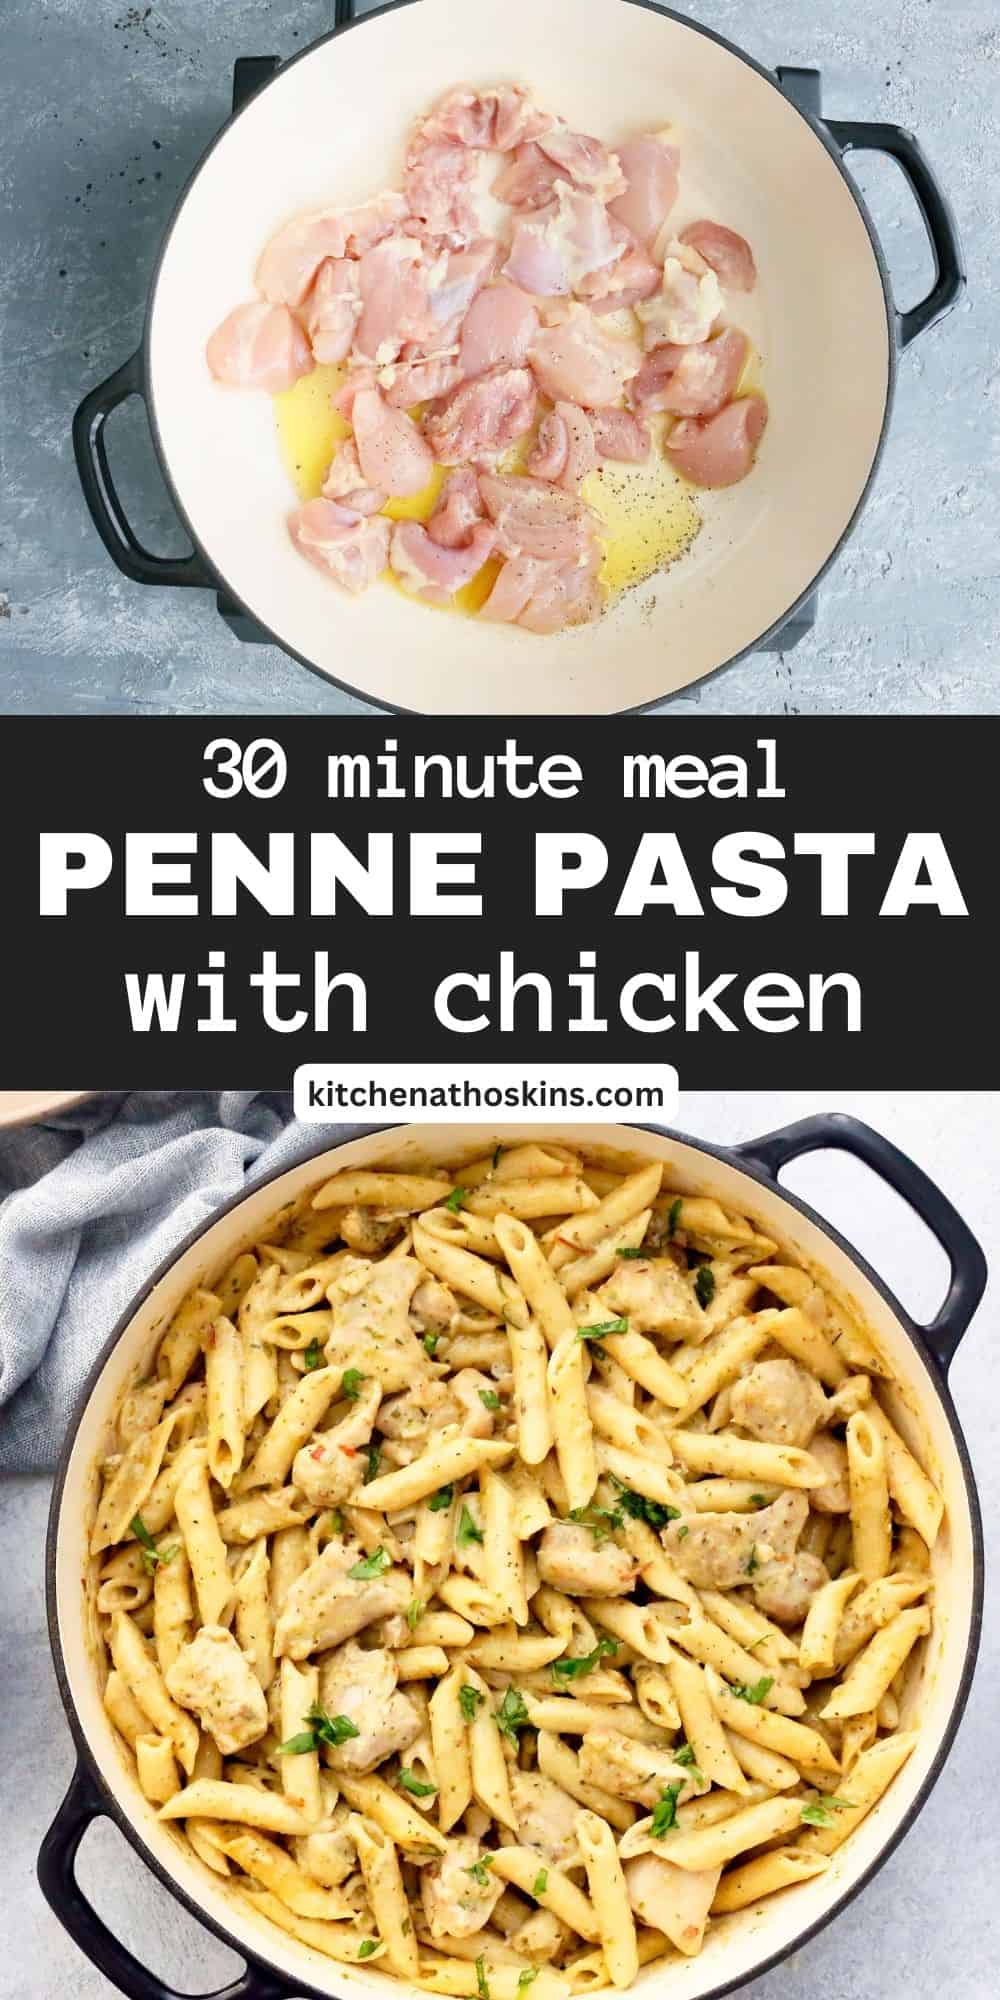 Creamy Chicken Pesto Pasta | Kitchen At Hoskins